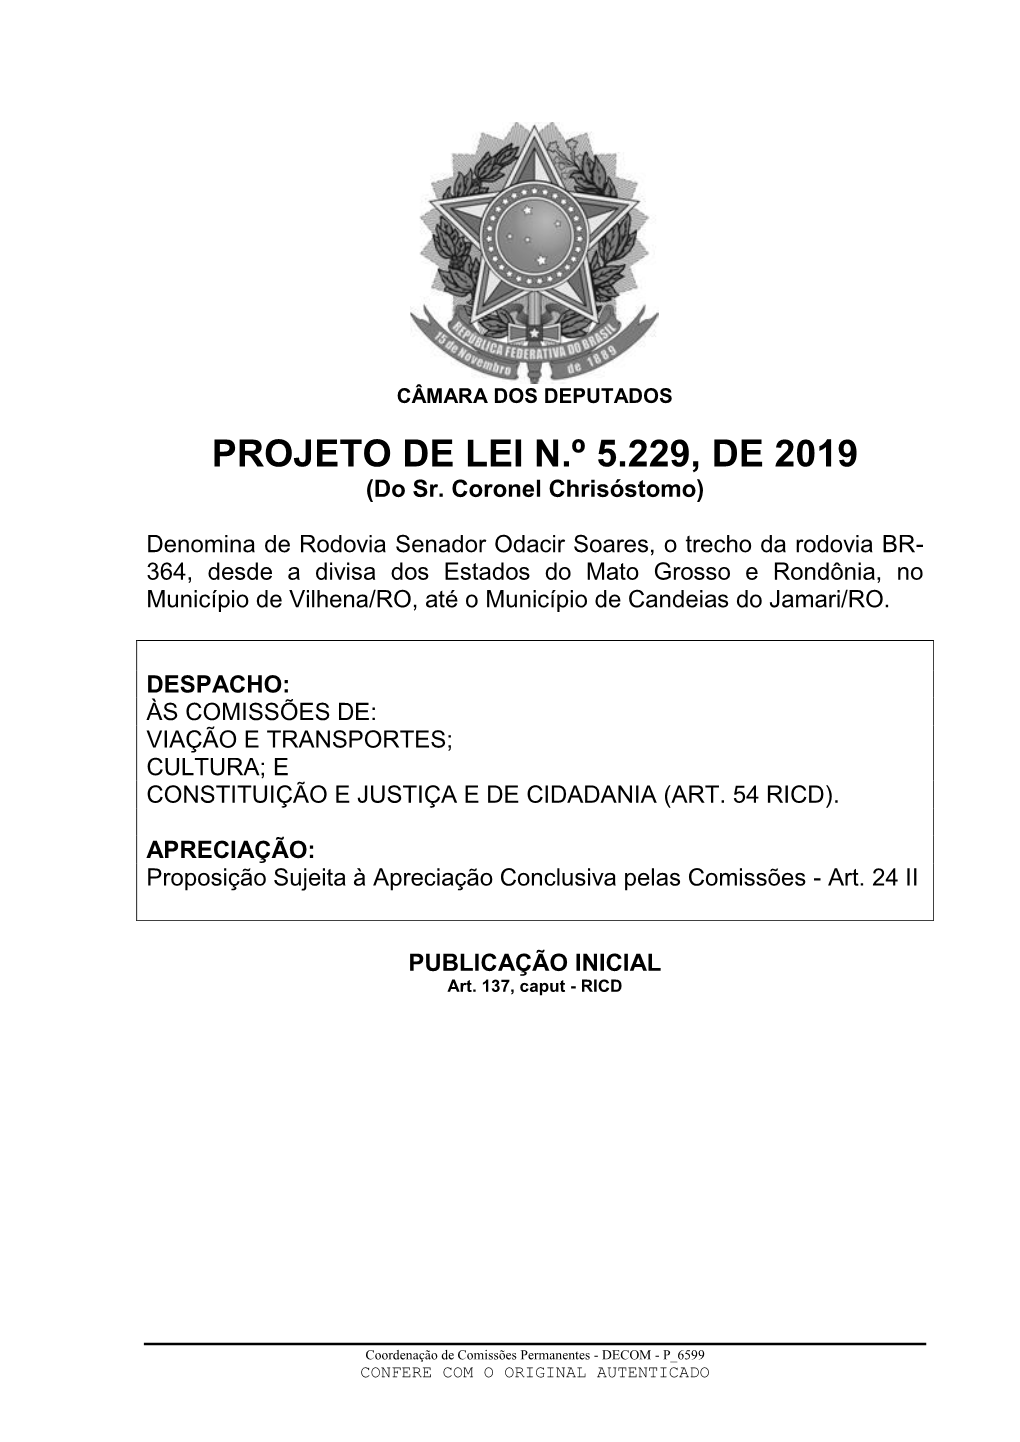 PROJETO DE LEI N.º 5.229, DE 2019 (Do Sr